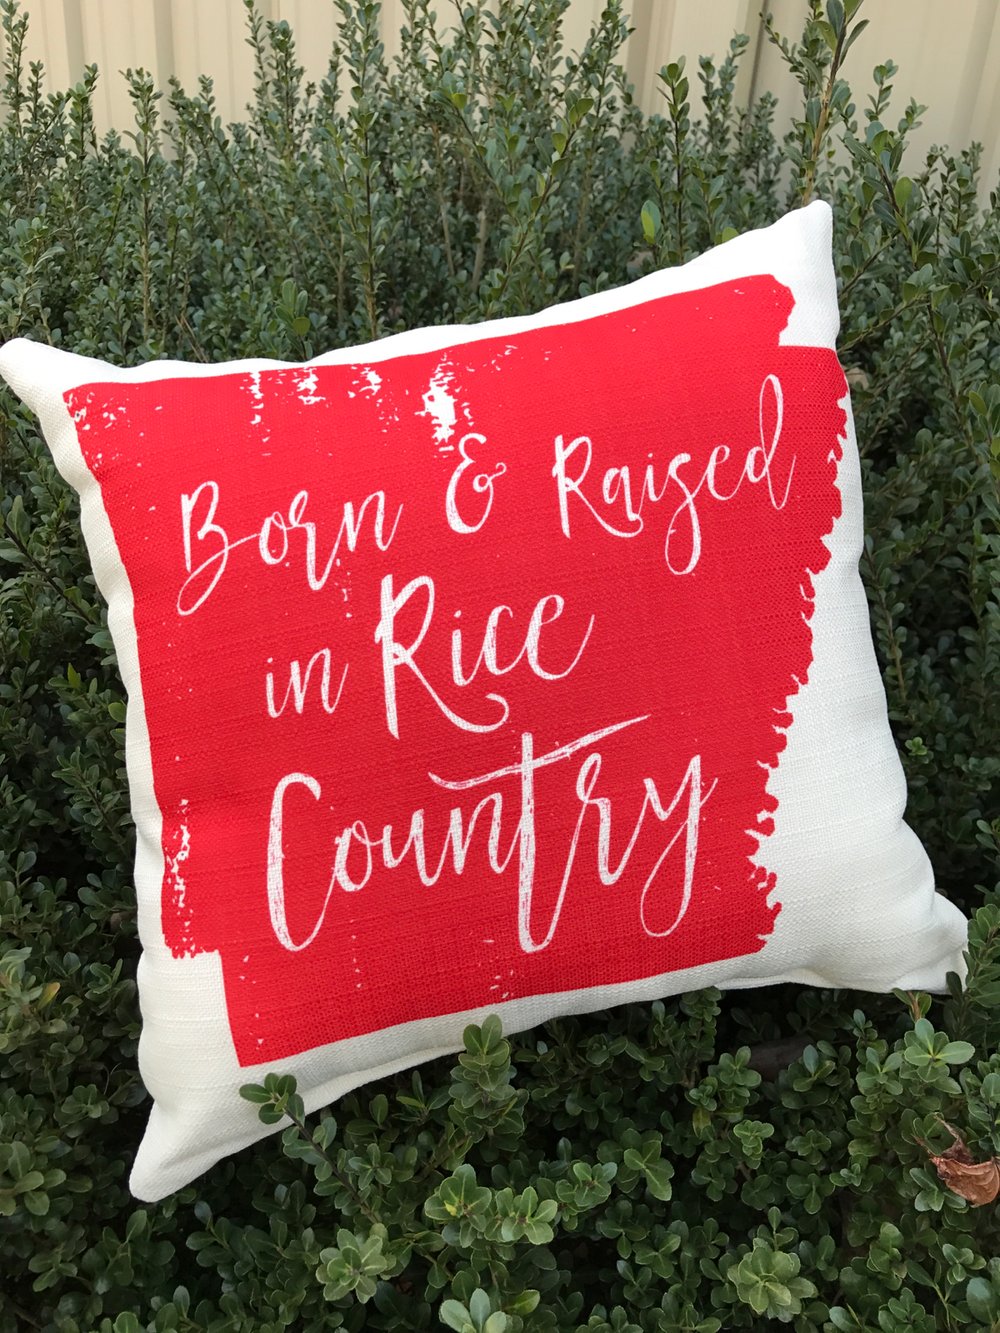 Arkansas Rice Pillow